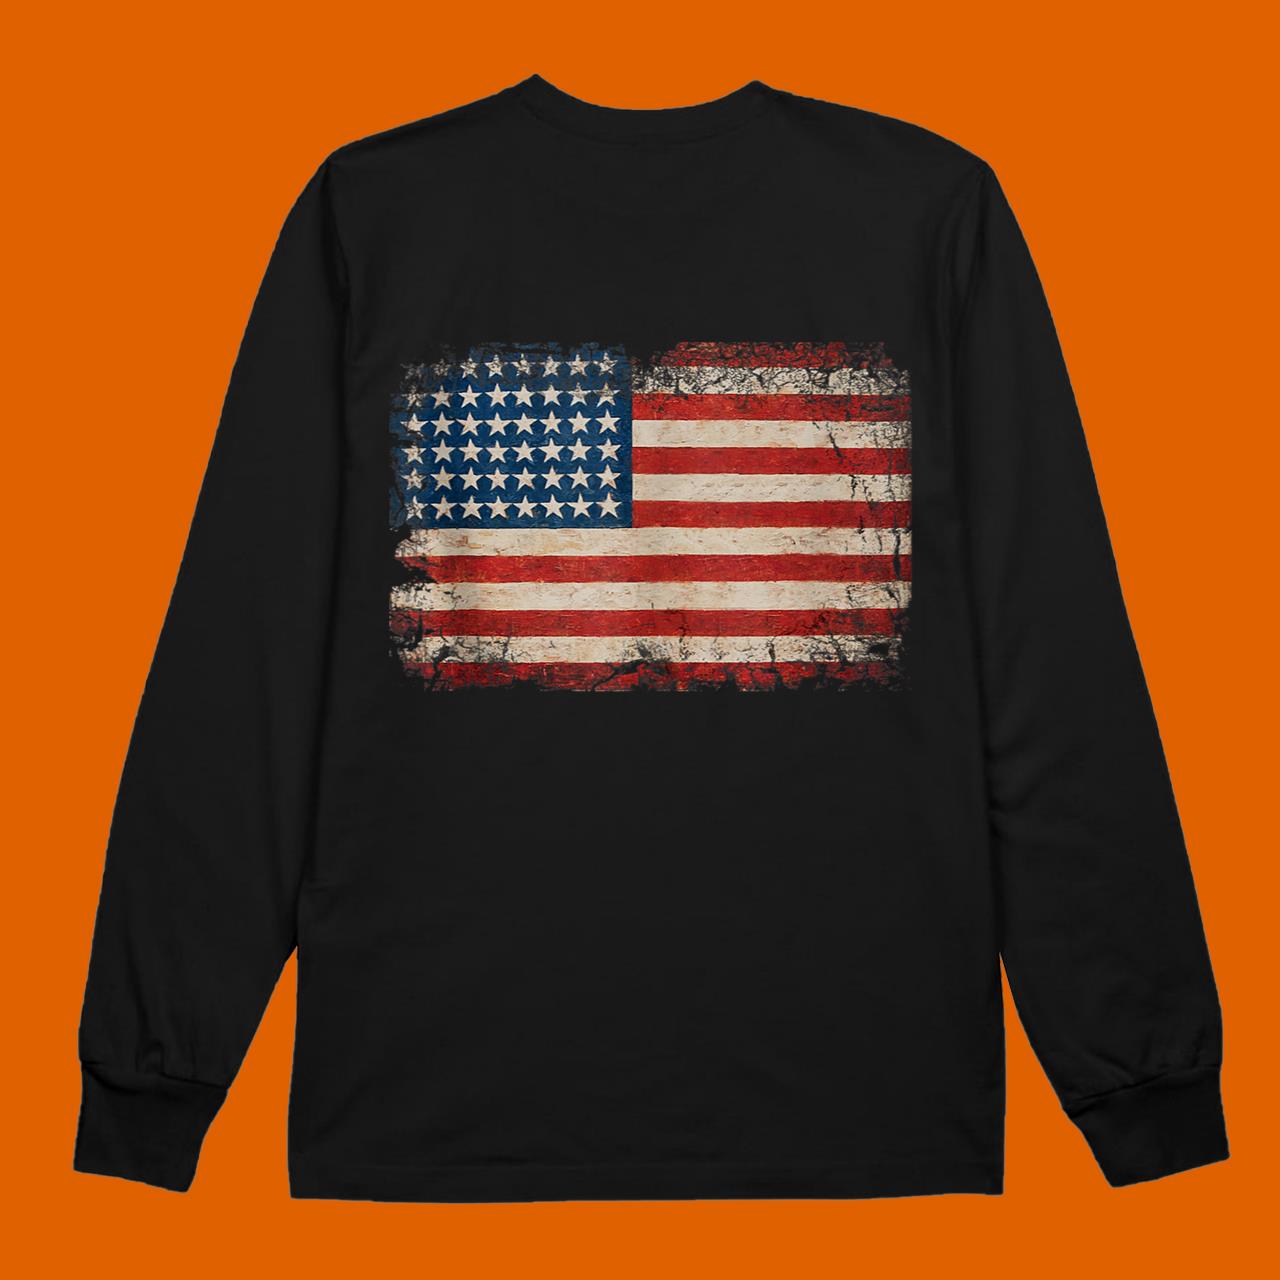 American Flag USA Patriotic US Stars & Stripes Shirts